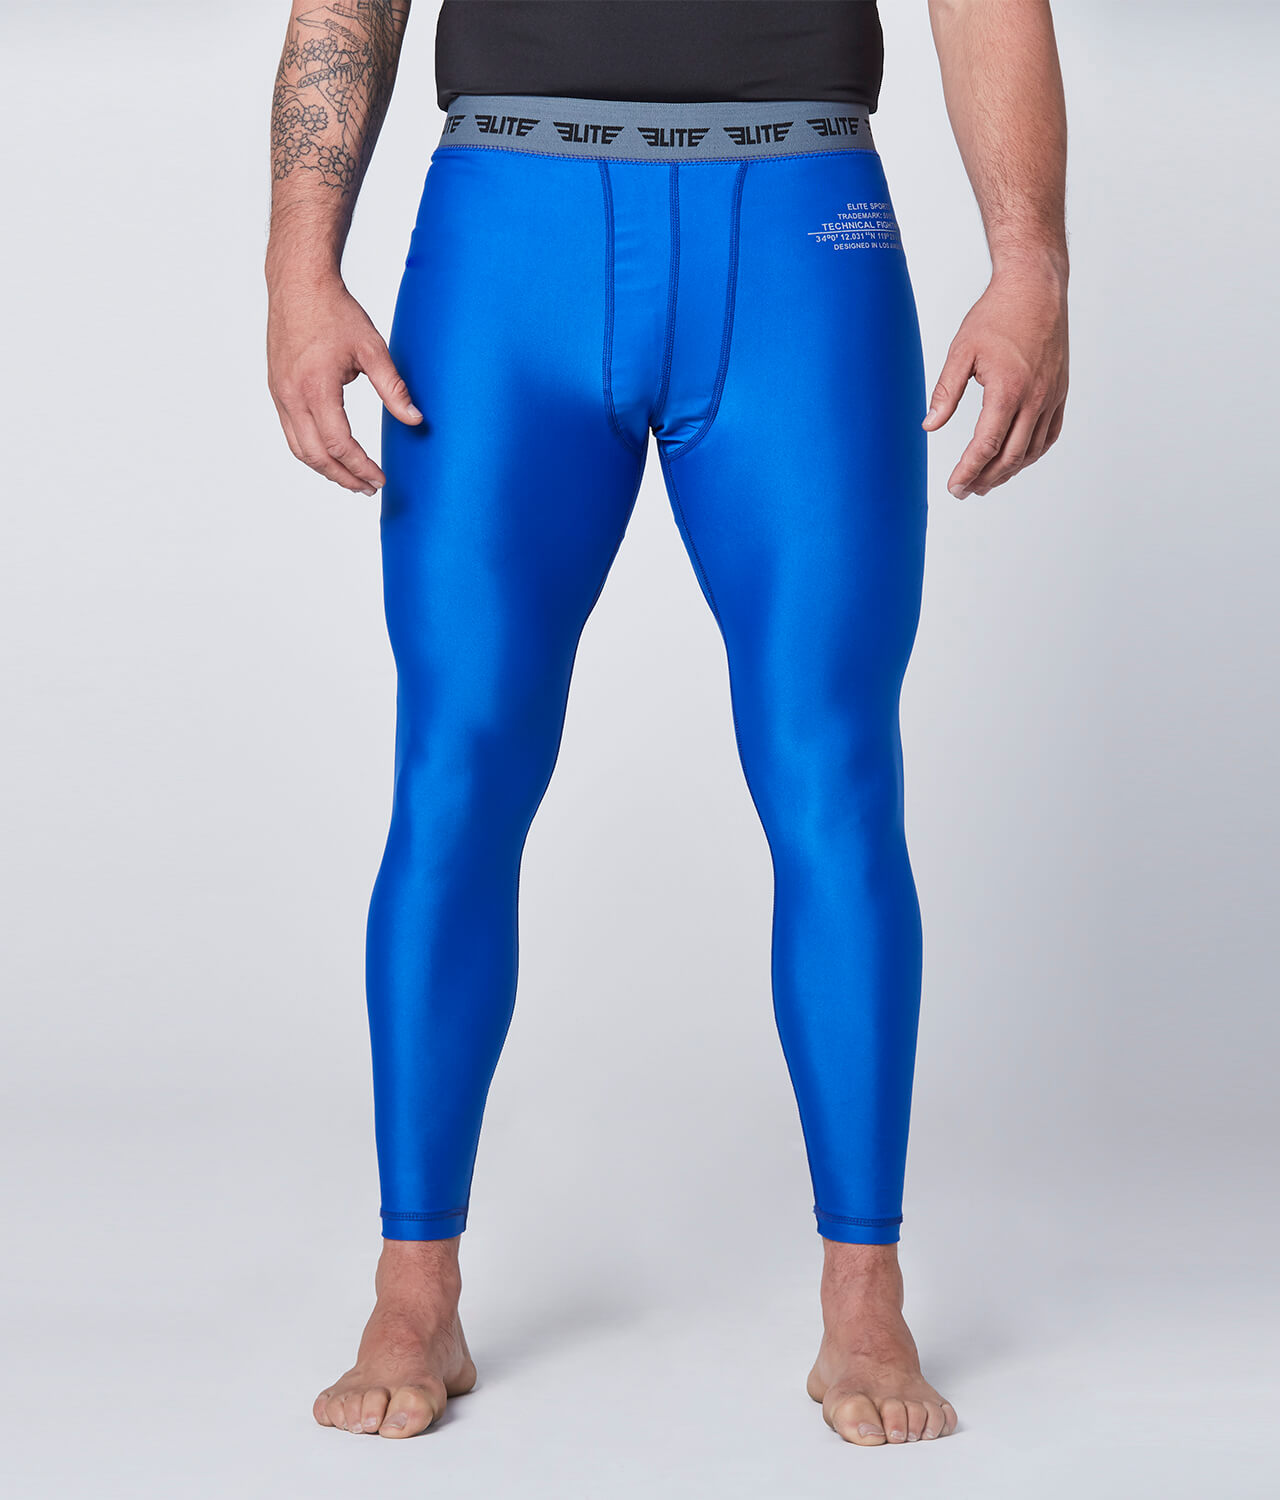 Elite Sports Plain Blue Compression Judo Spat Pants